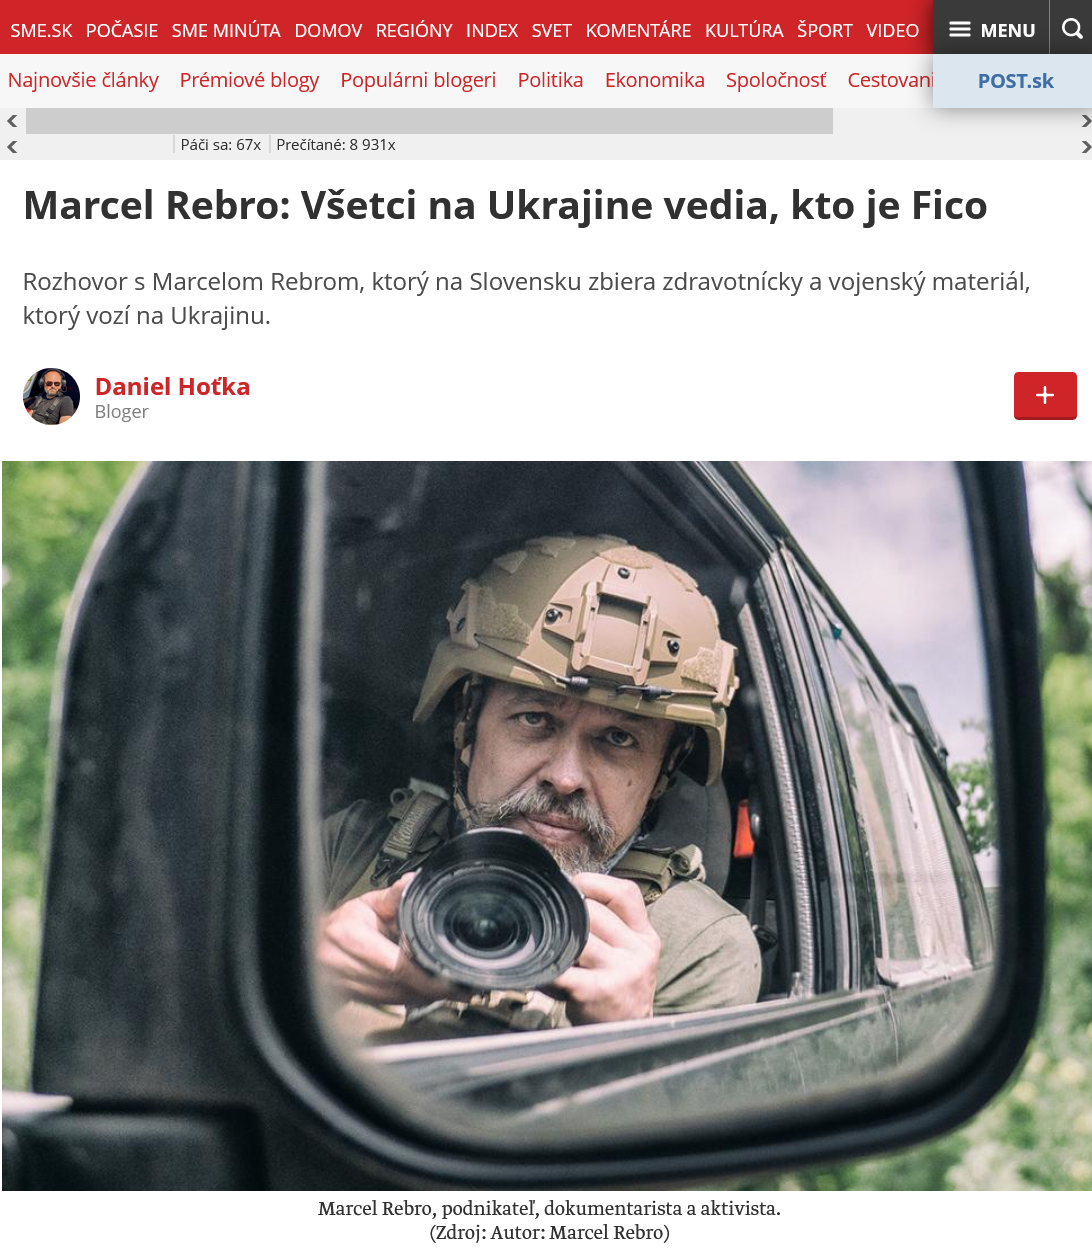 Marcel Rebro: Všetci na Ukrajine vedia, kto je Fico